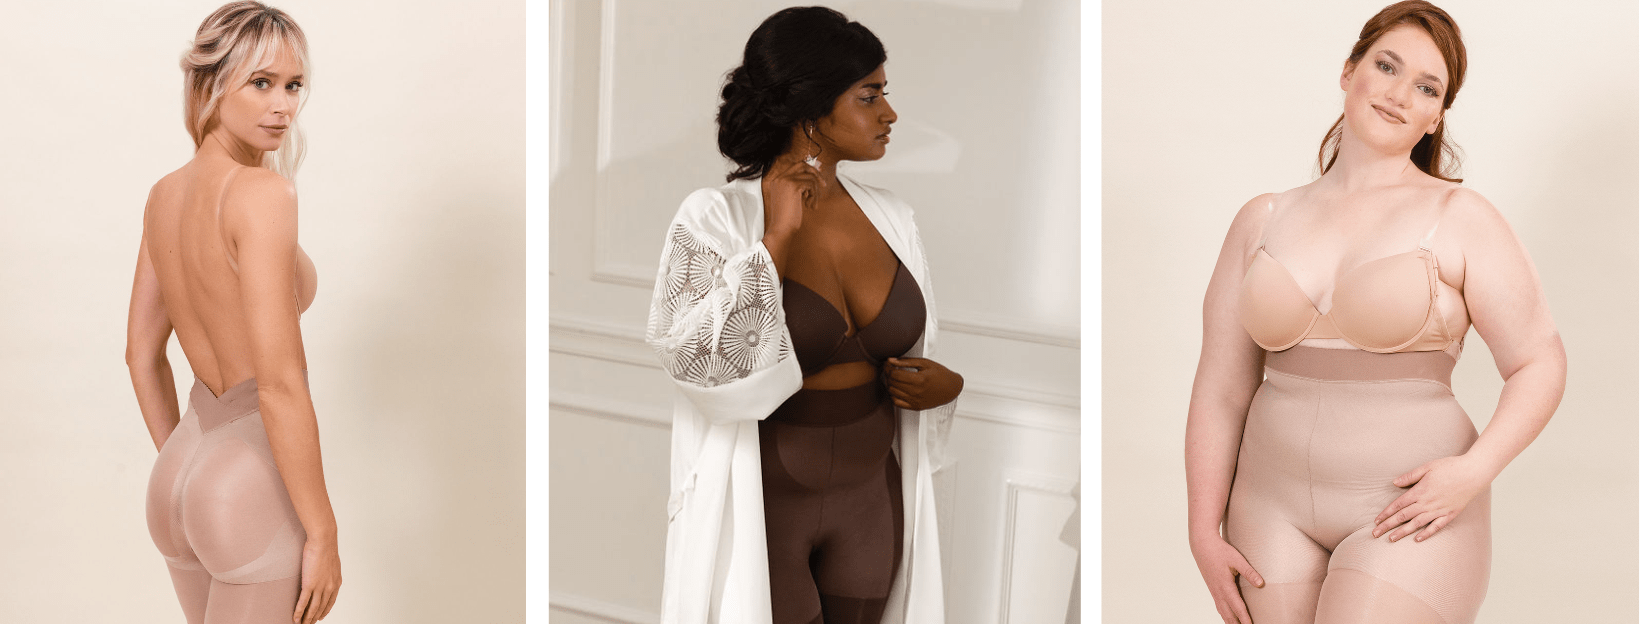 Women - Lingerie - Bras - Bra Sizes - 38F - Page 2 - Les Modes